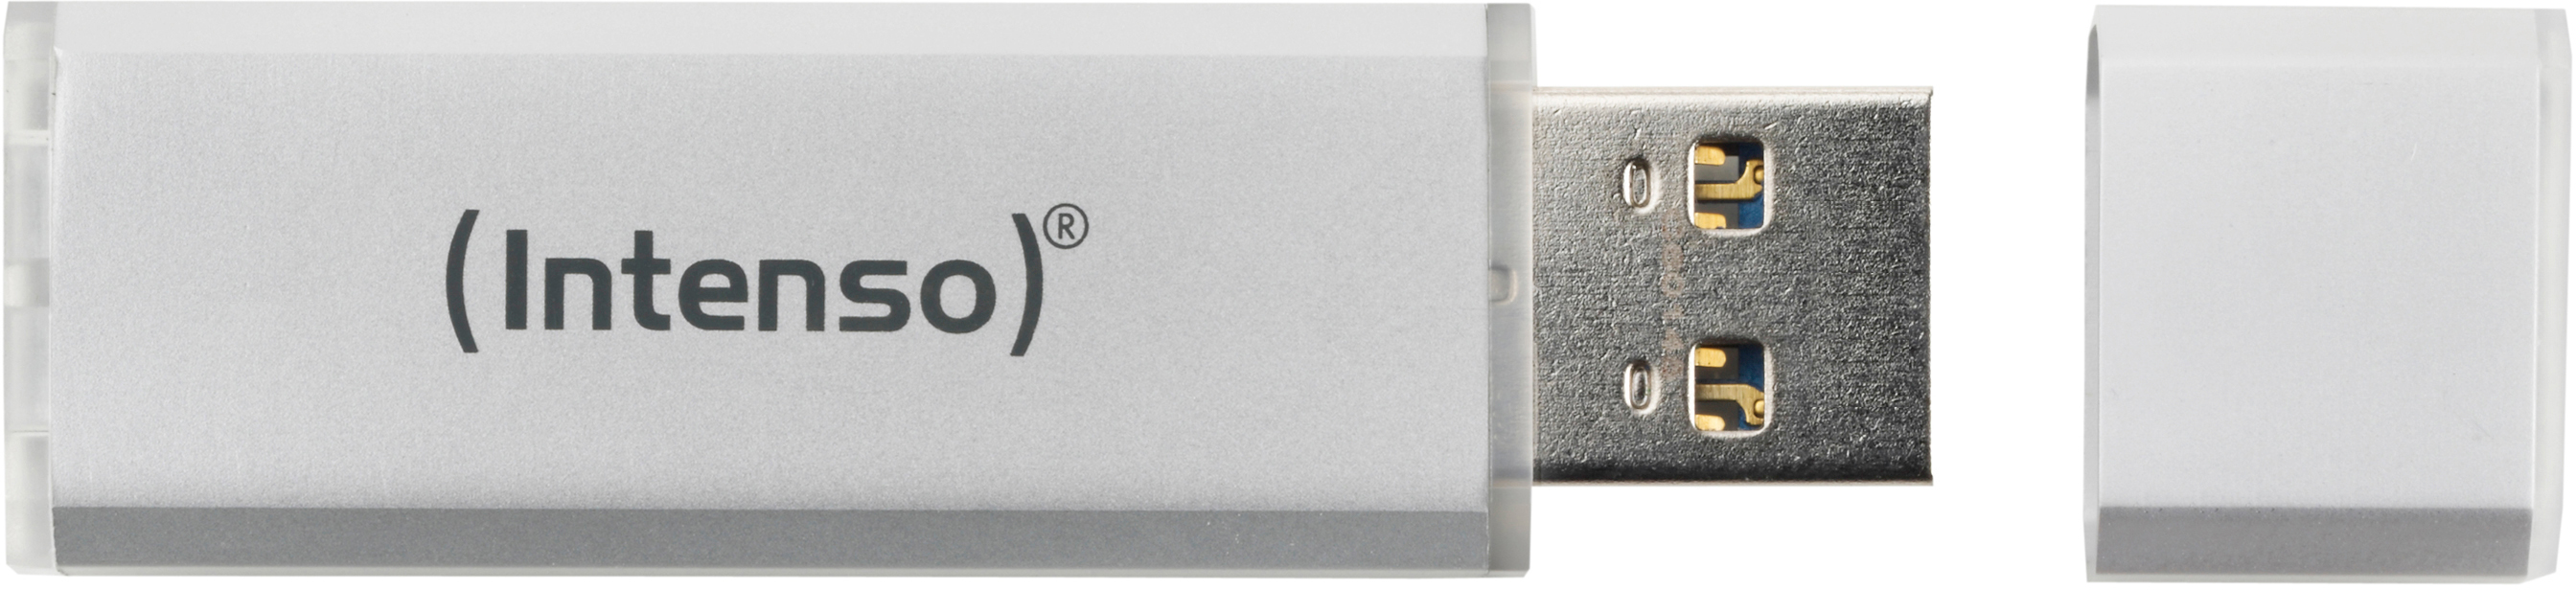 35 USB-Stick, INTENSO 16 Silber Ultra GB, Line MB/s,